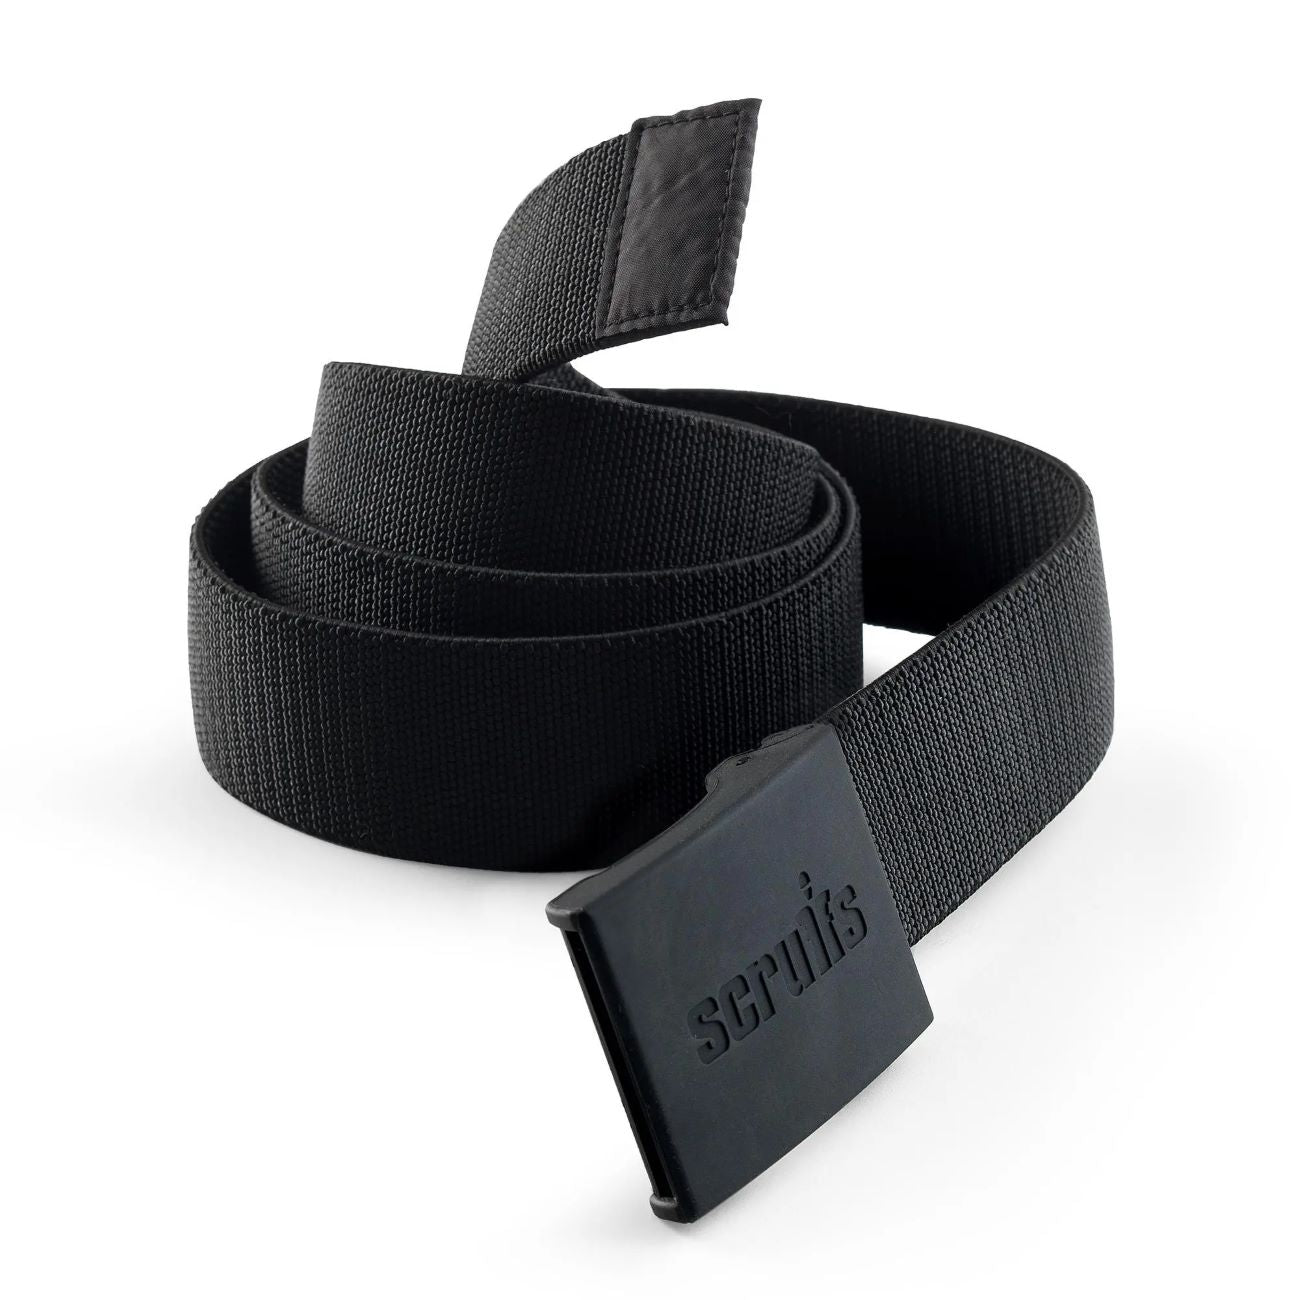 Scruffs Trade Stretch Belt Black One Size